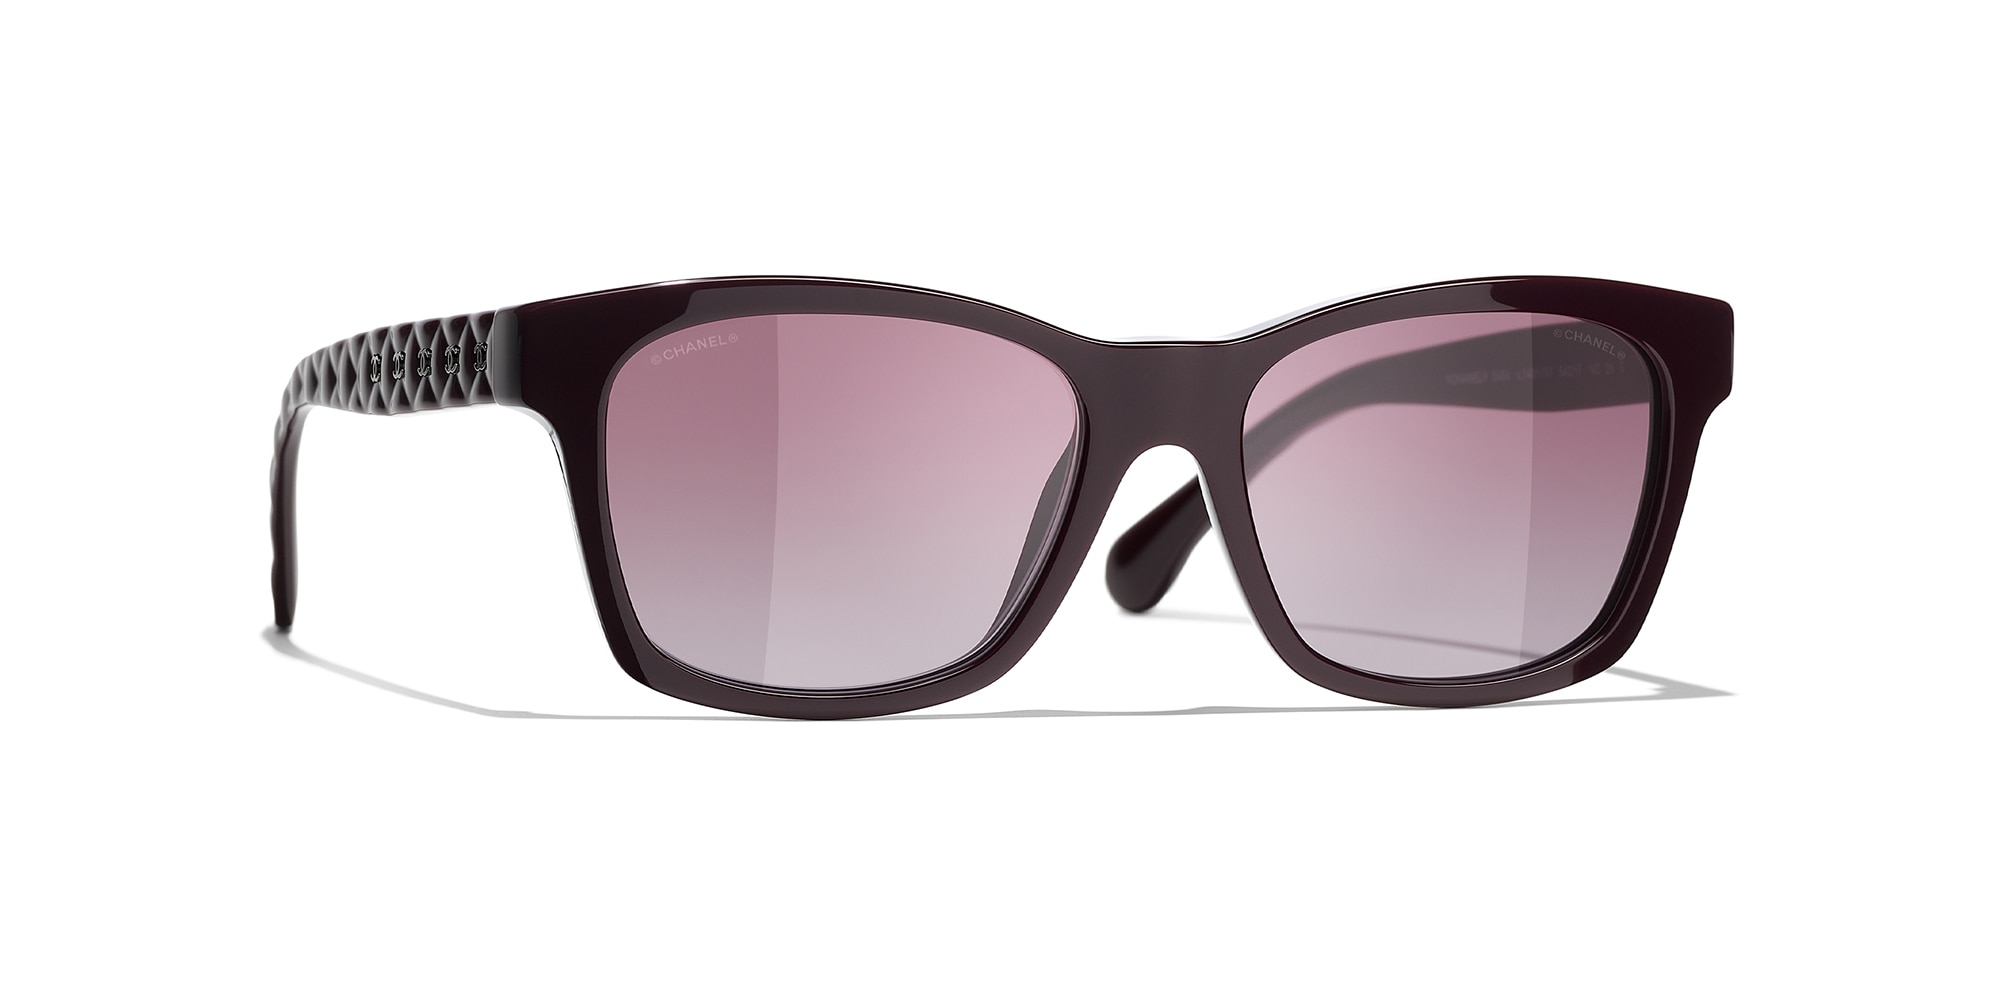 Cheap designer sunglasses for women 2022  The Sun UK  The Sun